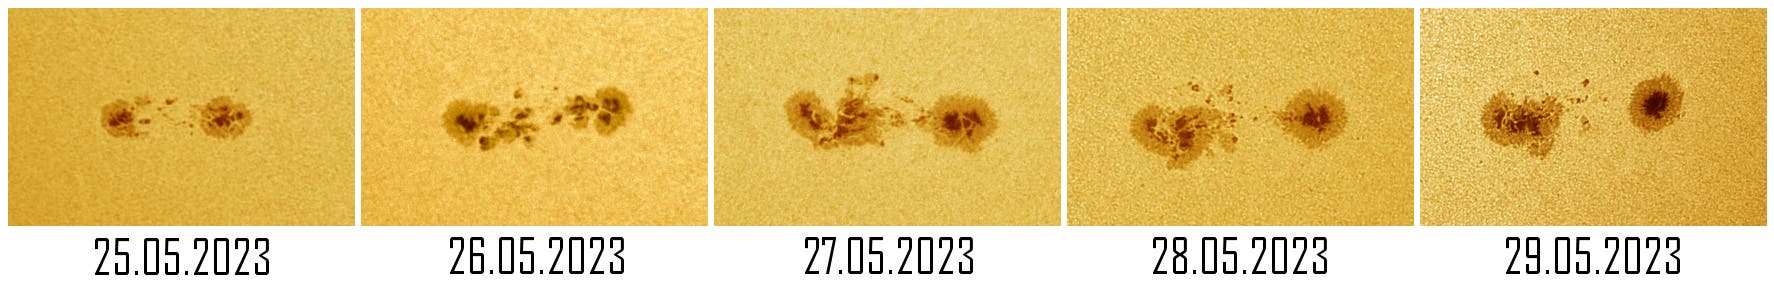 Entwicklung der Sonnenfleckengruppe AR3315 über fünf Tage